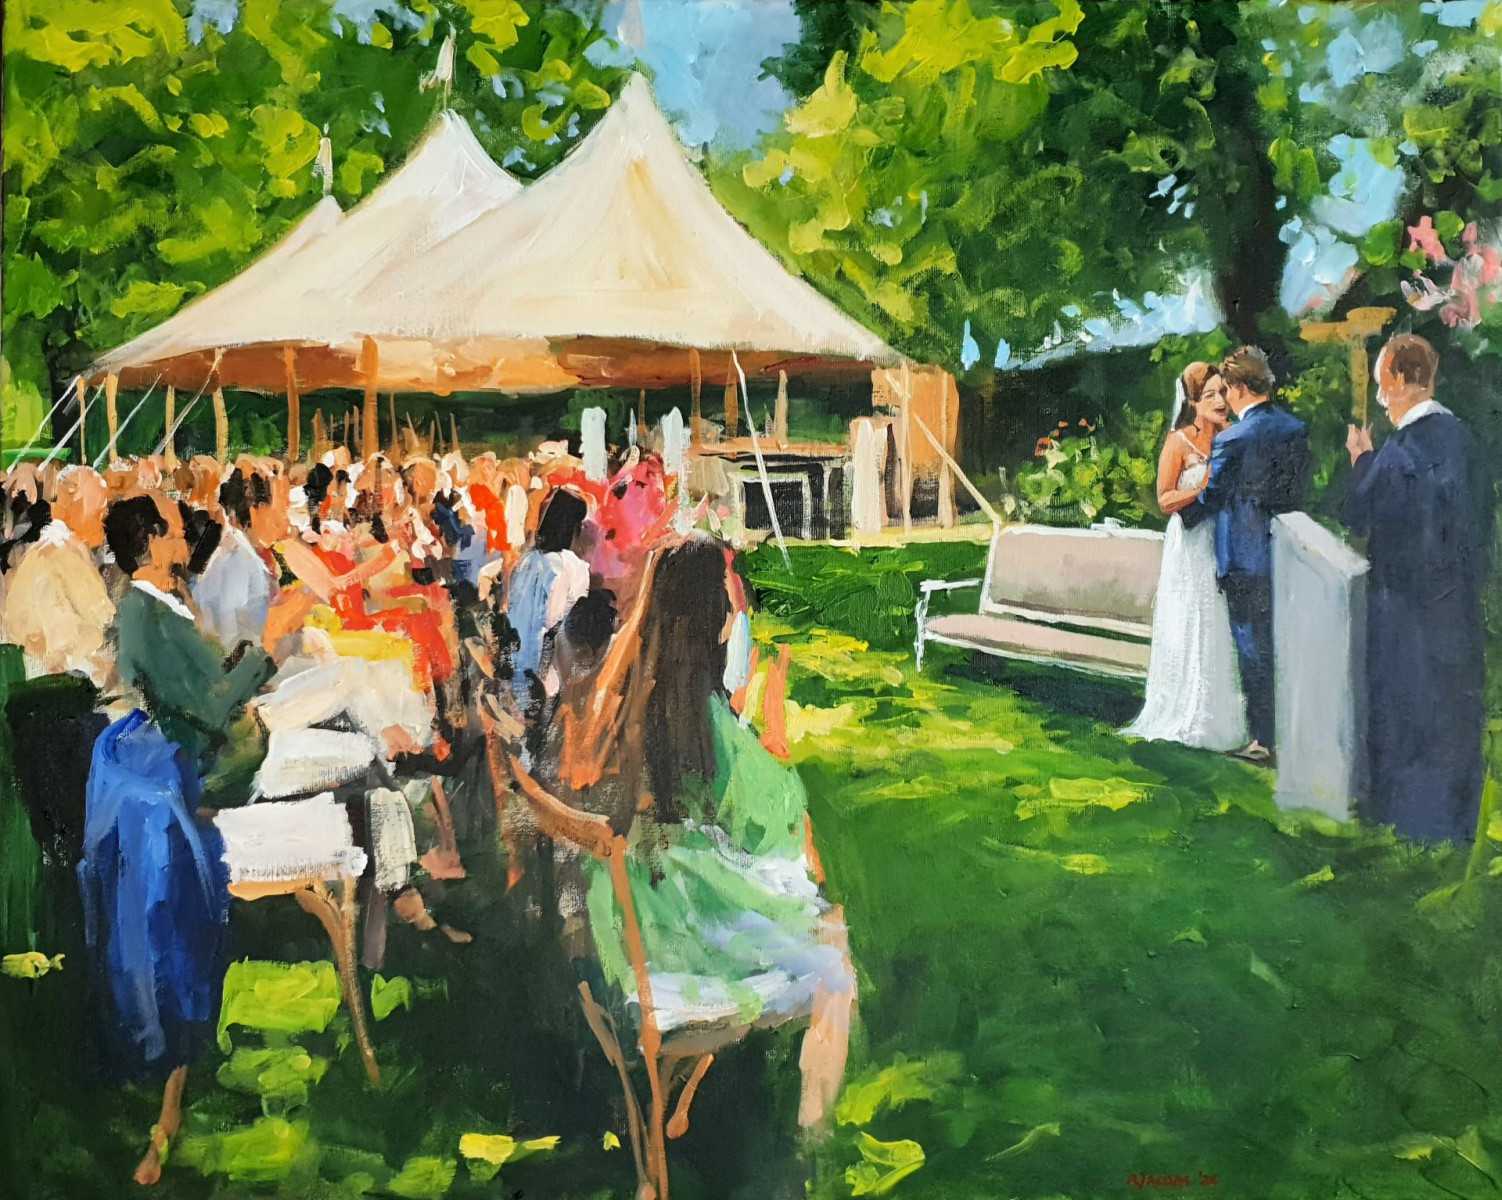 Rob Jacobs schildert doek van 80x100cm tijdens de trouwceremonie in Rockanje, Zuid-Holland.